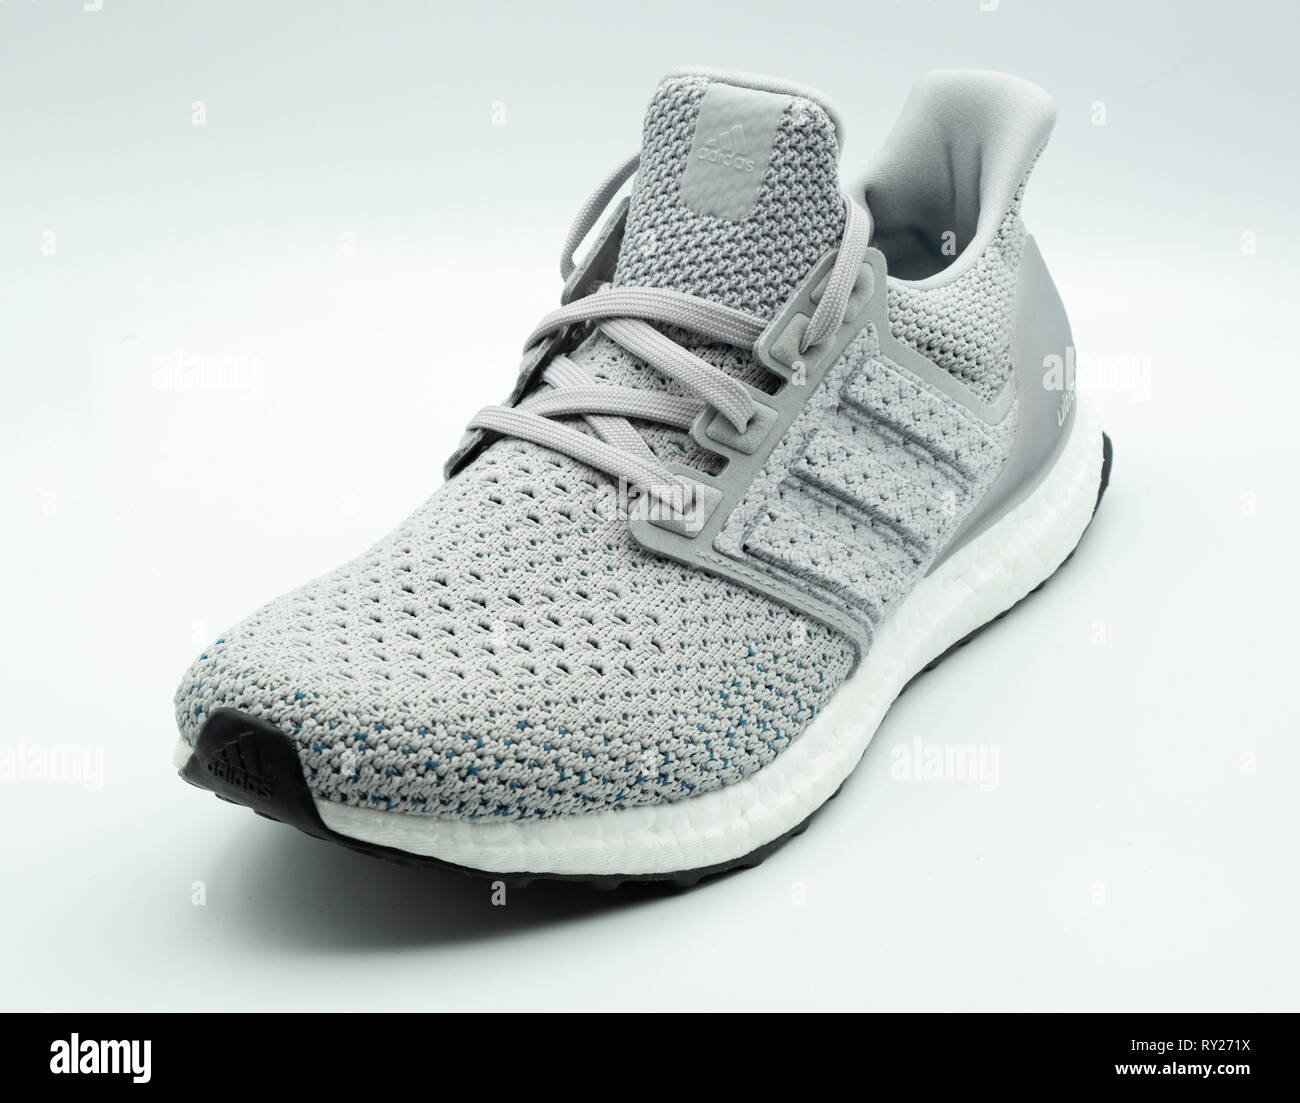 Adidas Ultra Boost clima Grau sneaker Ausschnitt auf weißem Hintergrund Stockfoto